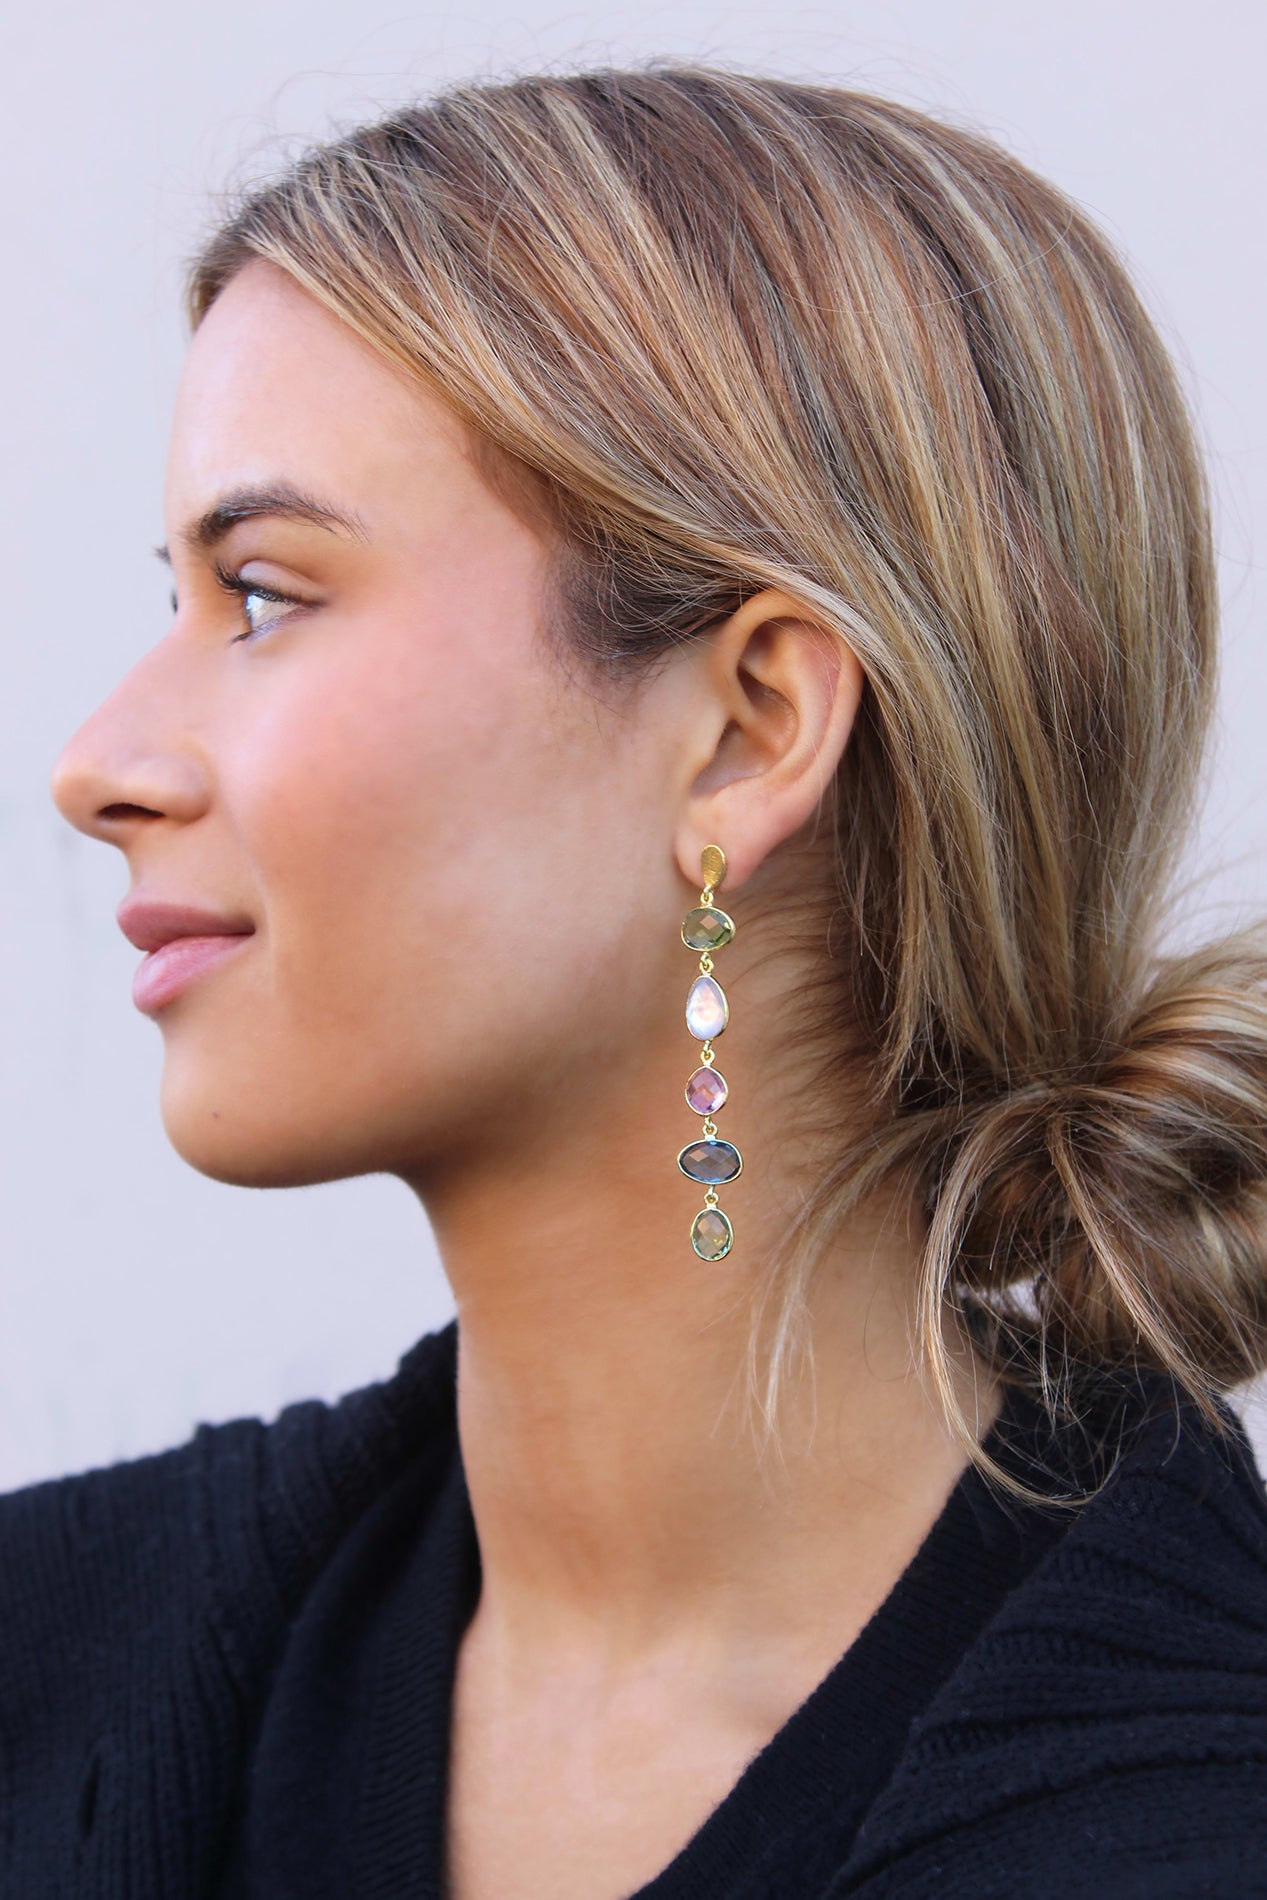 Nana Long earrings